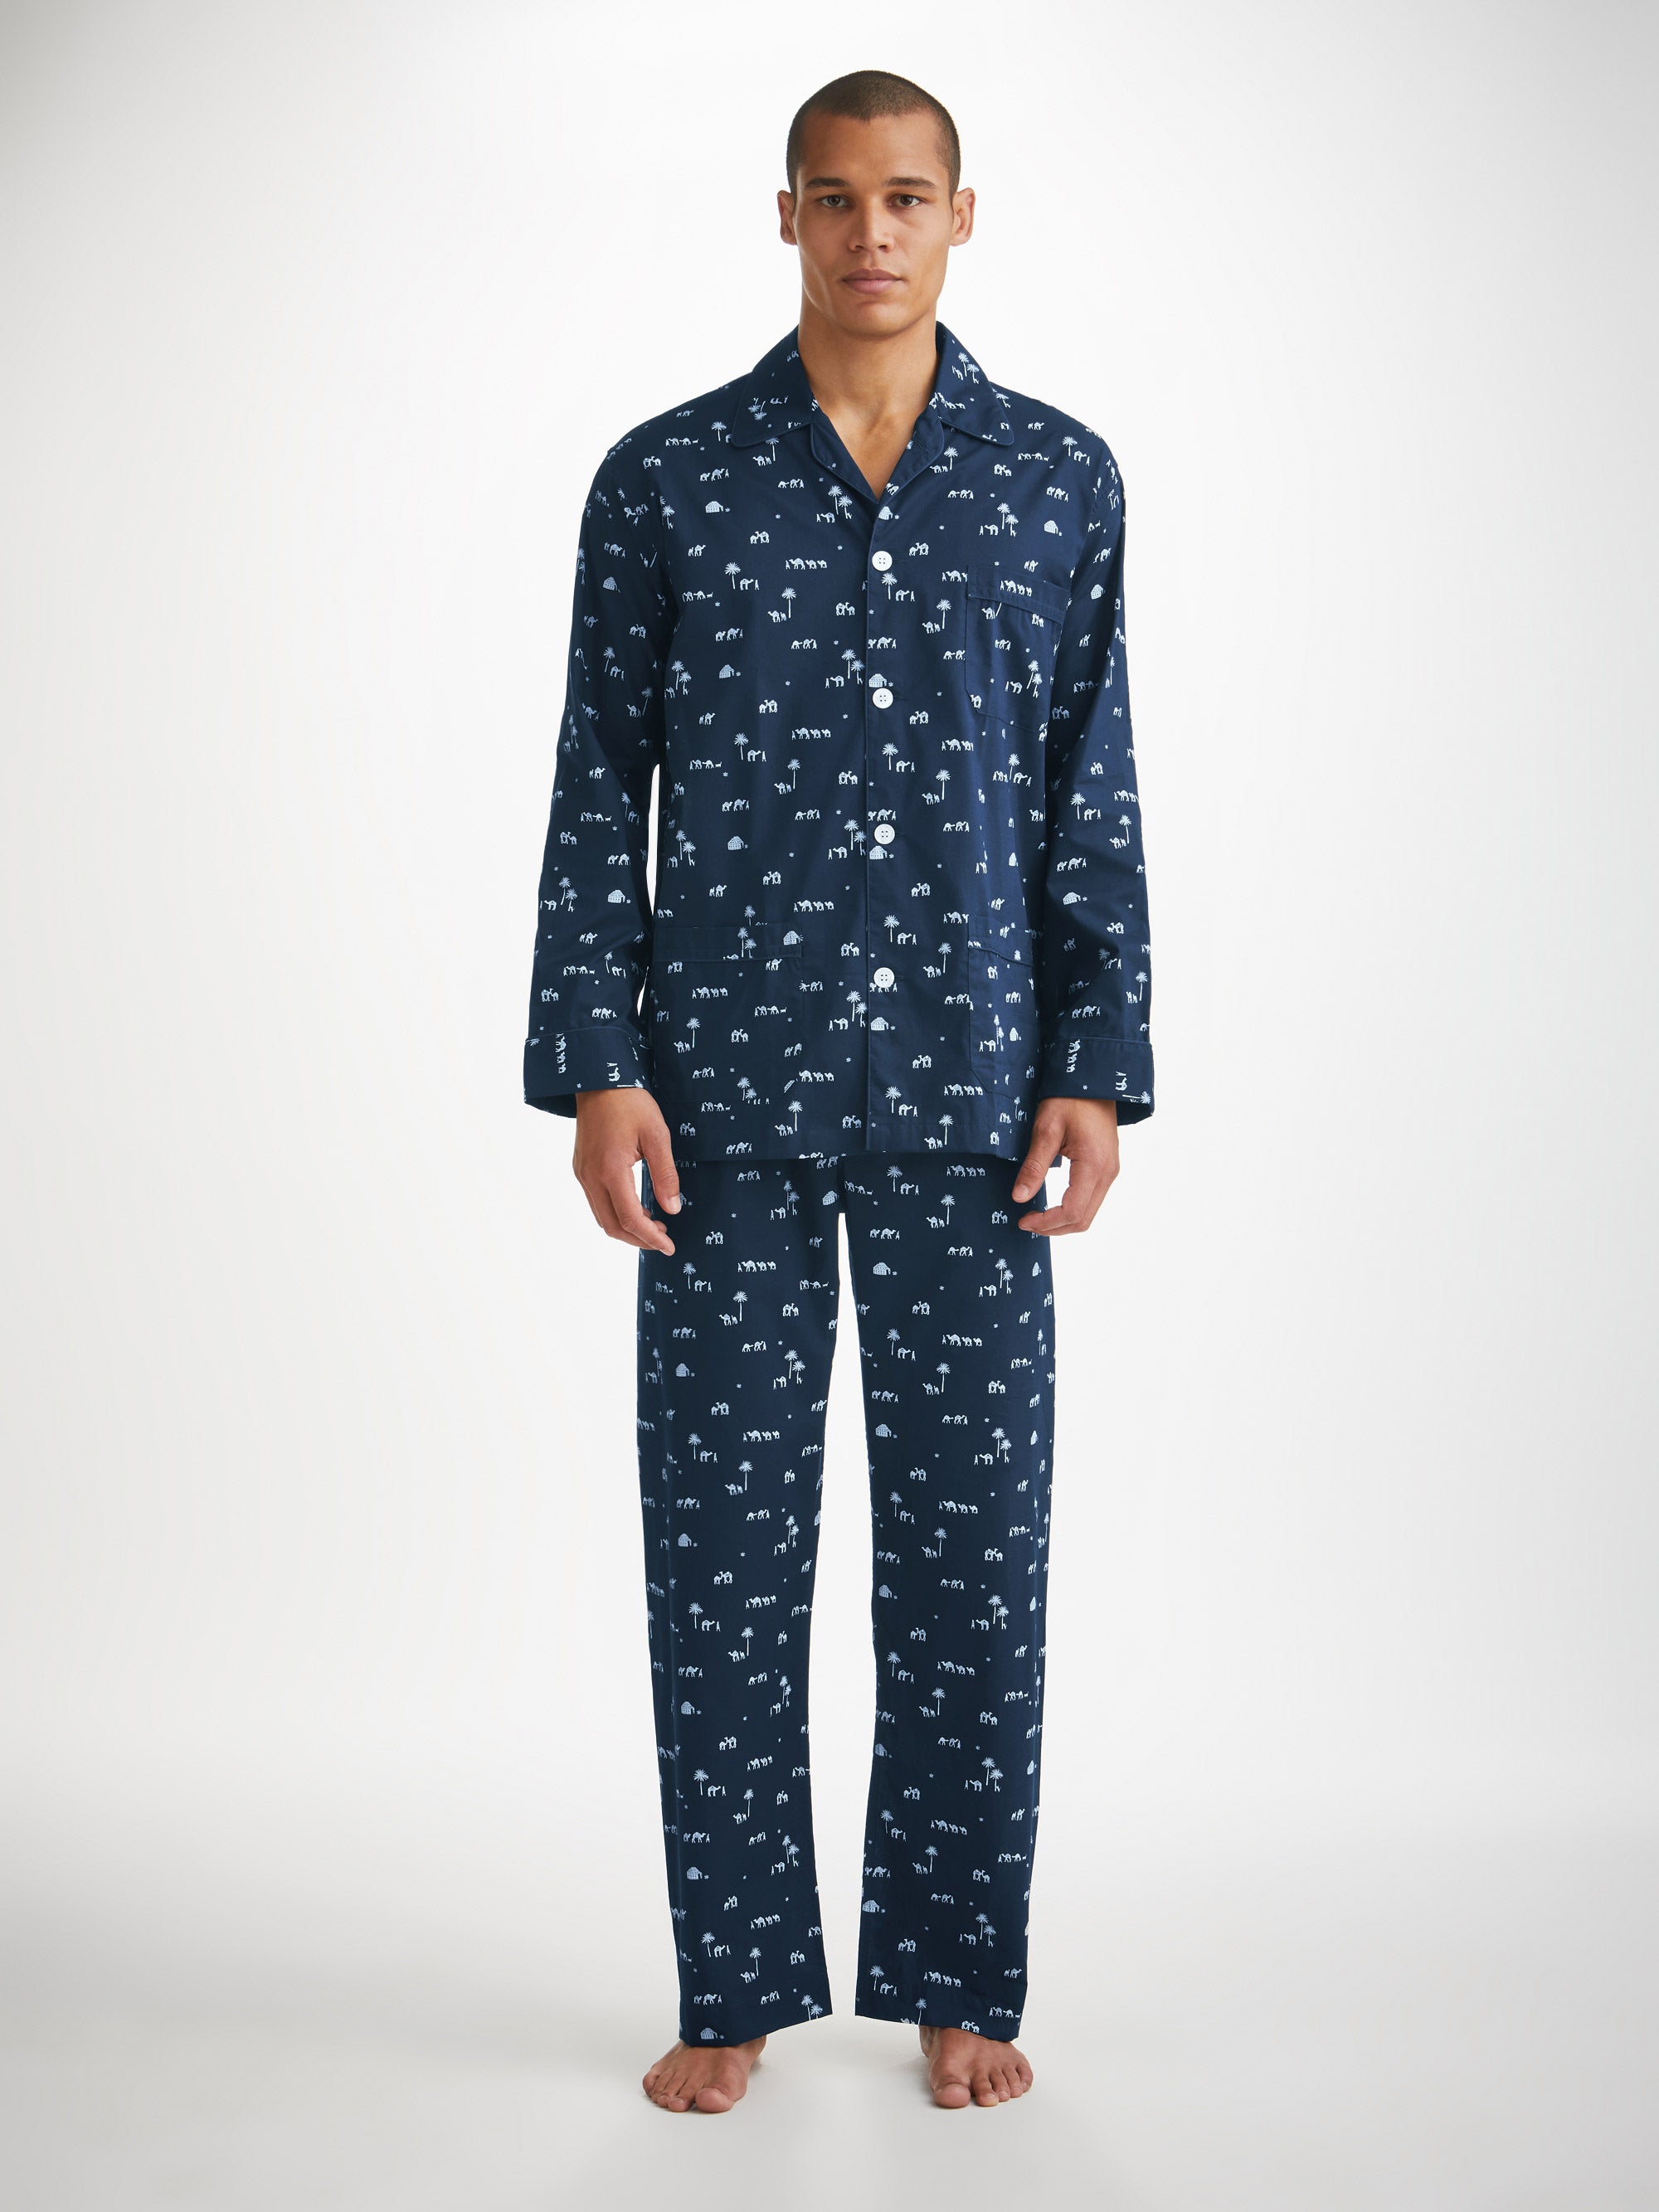 Men's Classic Fit Pyjamas Nelson 99 Cotton Batiste Navy